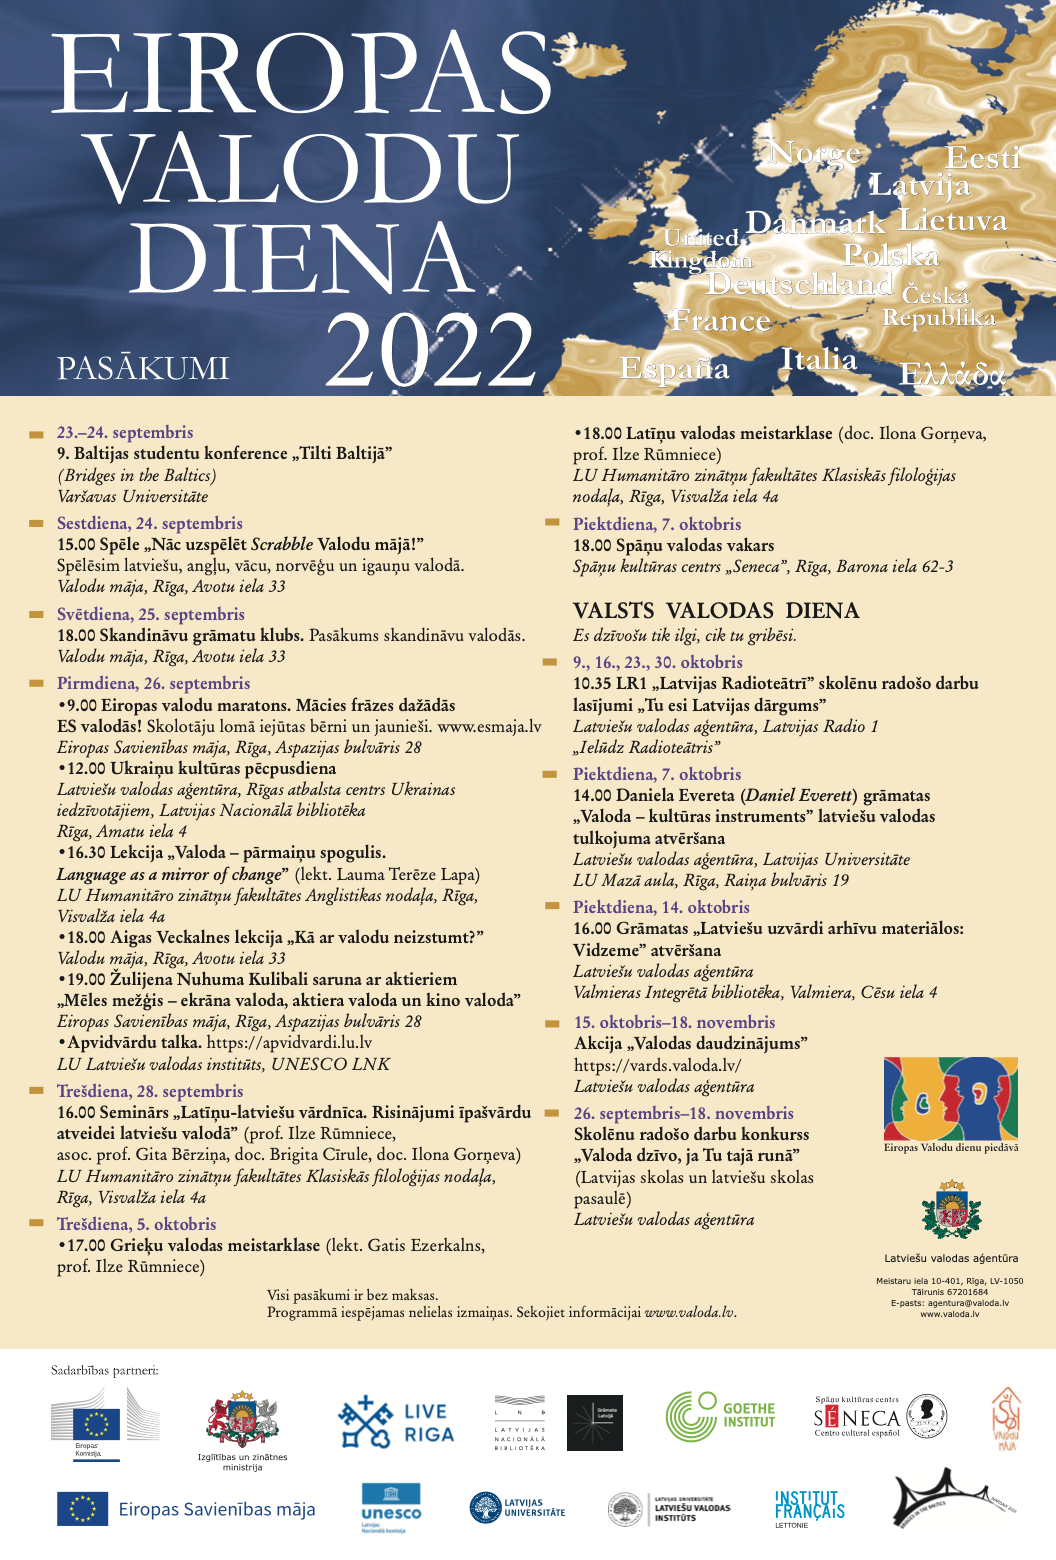 Eiropas Valodu diena 2022 - pasākumi